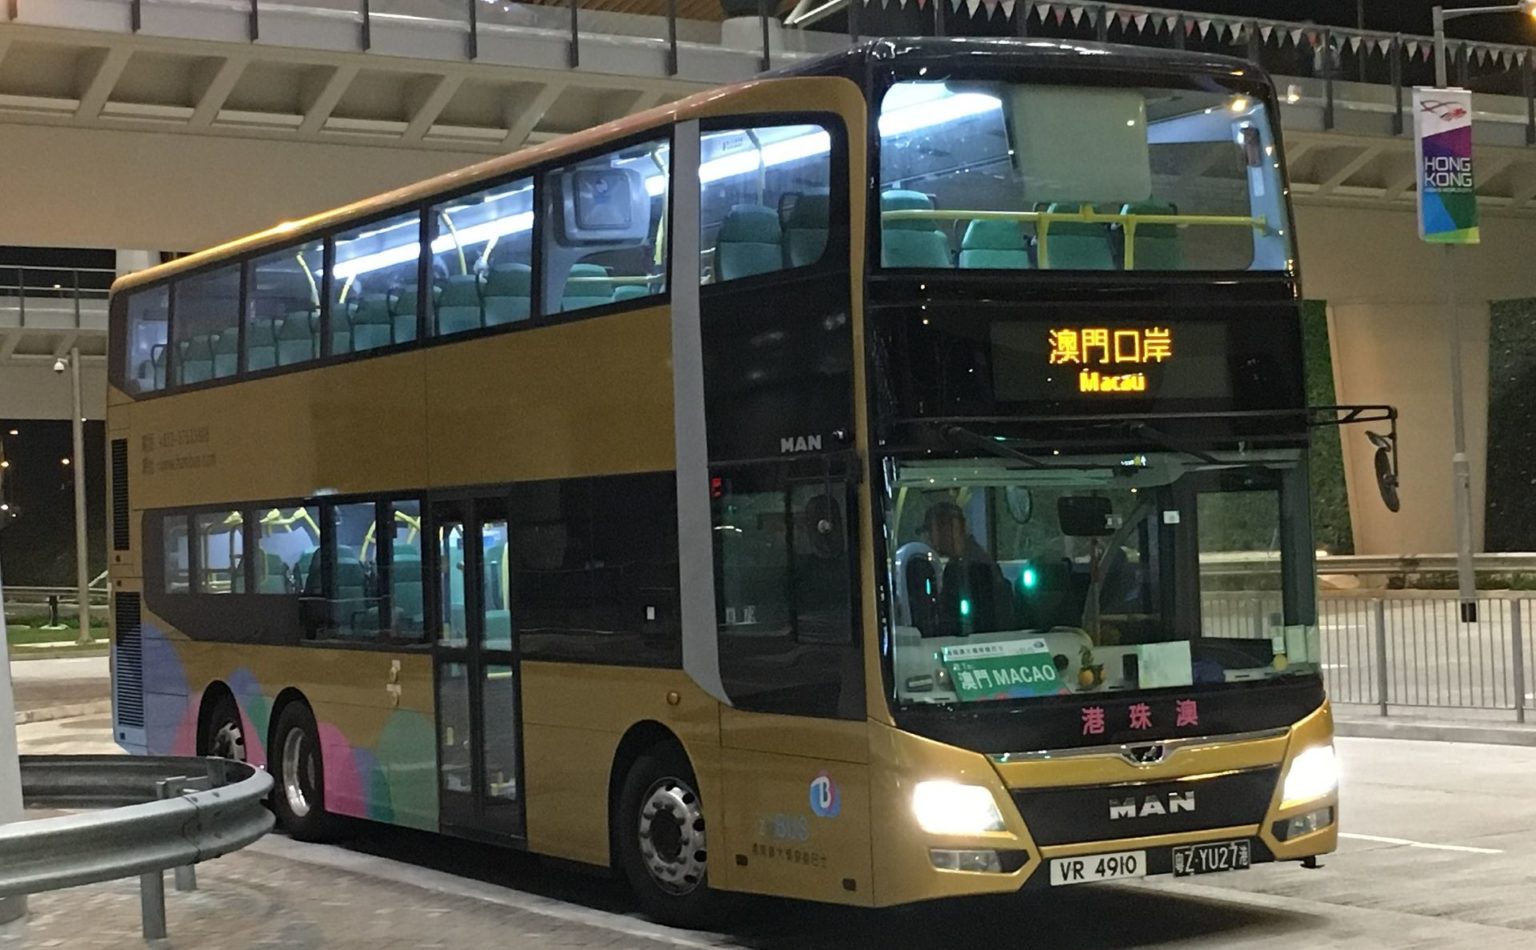 Shuttle bus from Hong Kong to Macau.